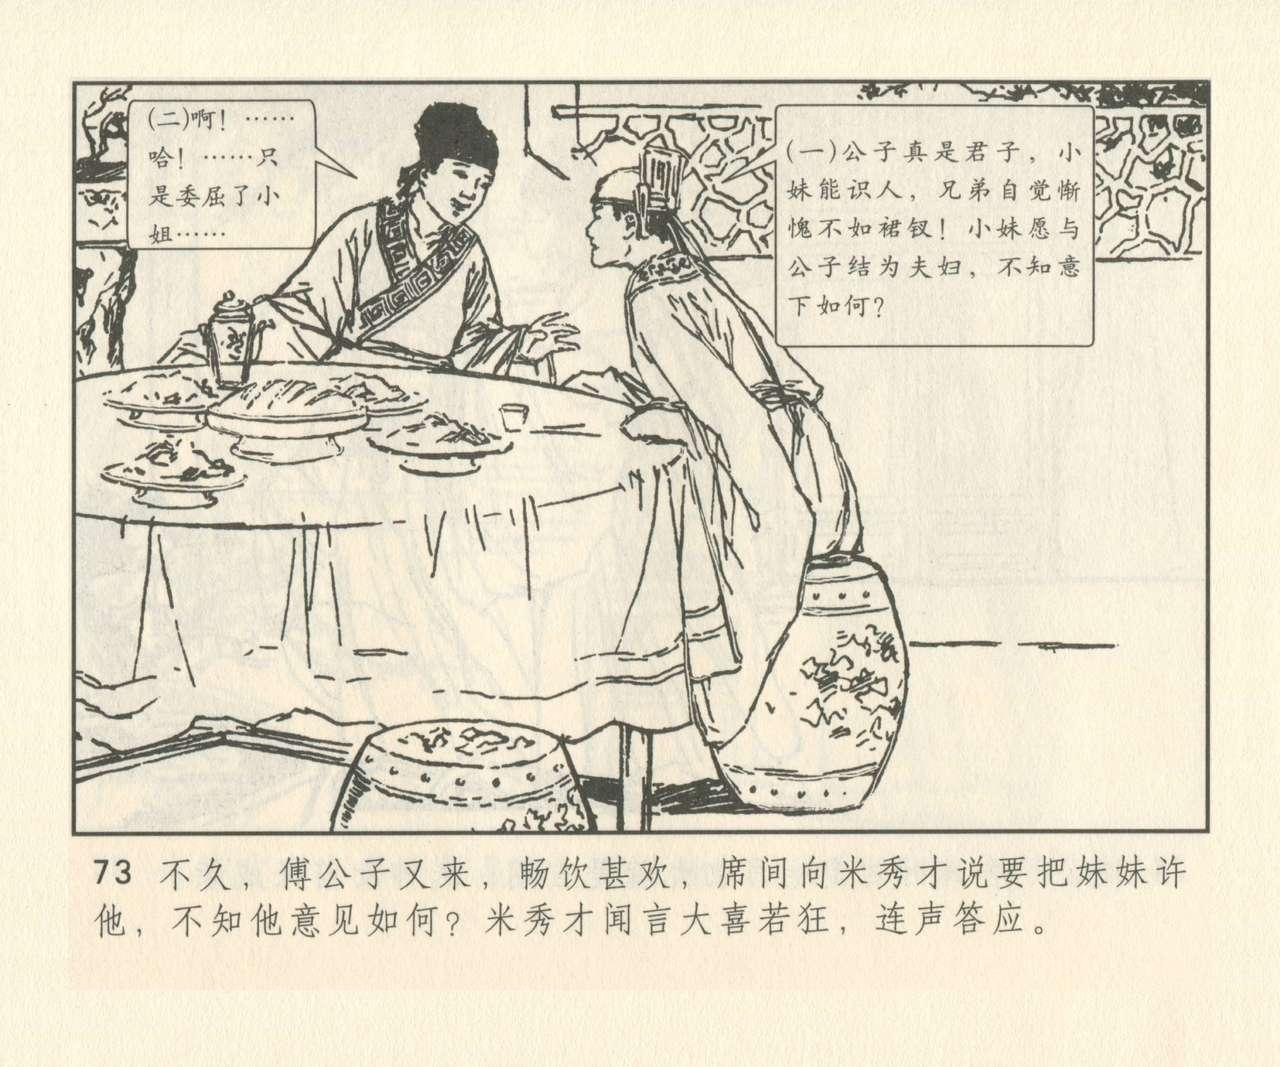 聊斋志异 张玮等绘 天津人民美术出版社 卷二十一 ~ 三十 201